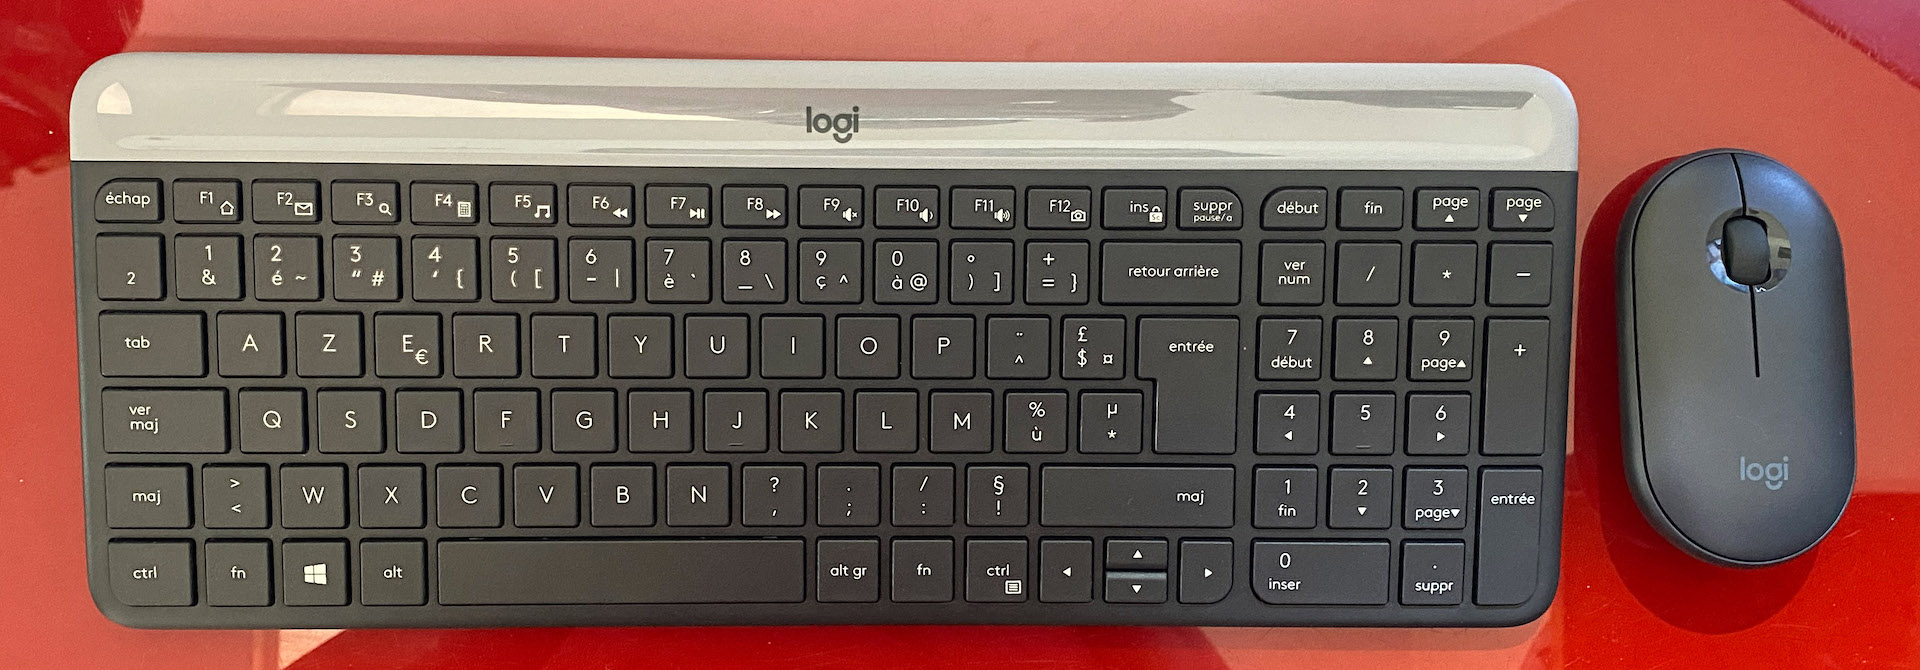 Acer Combo 100 Clavier Sans Fil + Souris Sans Fil, Clavier Classique Pour  Ordinateur PC, Bluetooth, USB-A, Noir